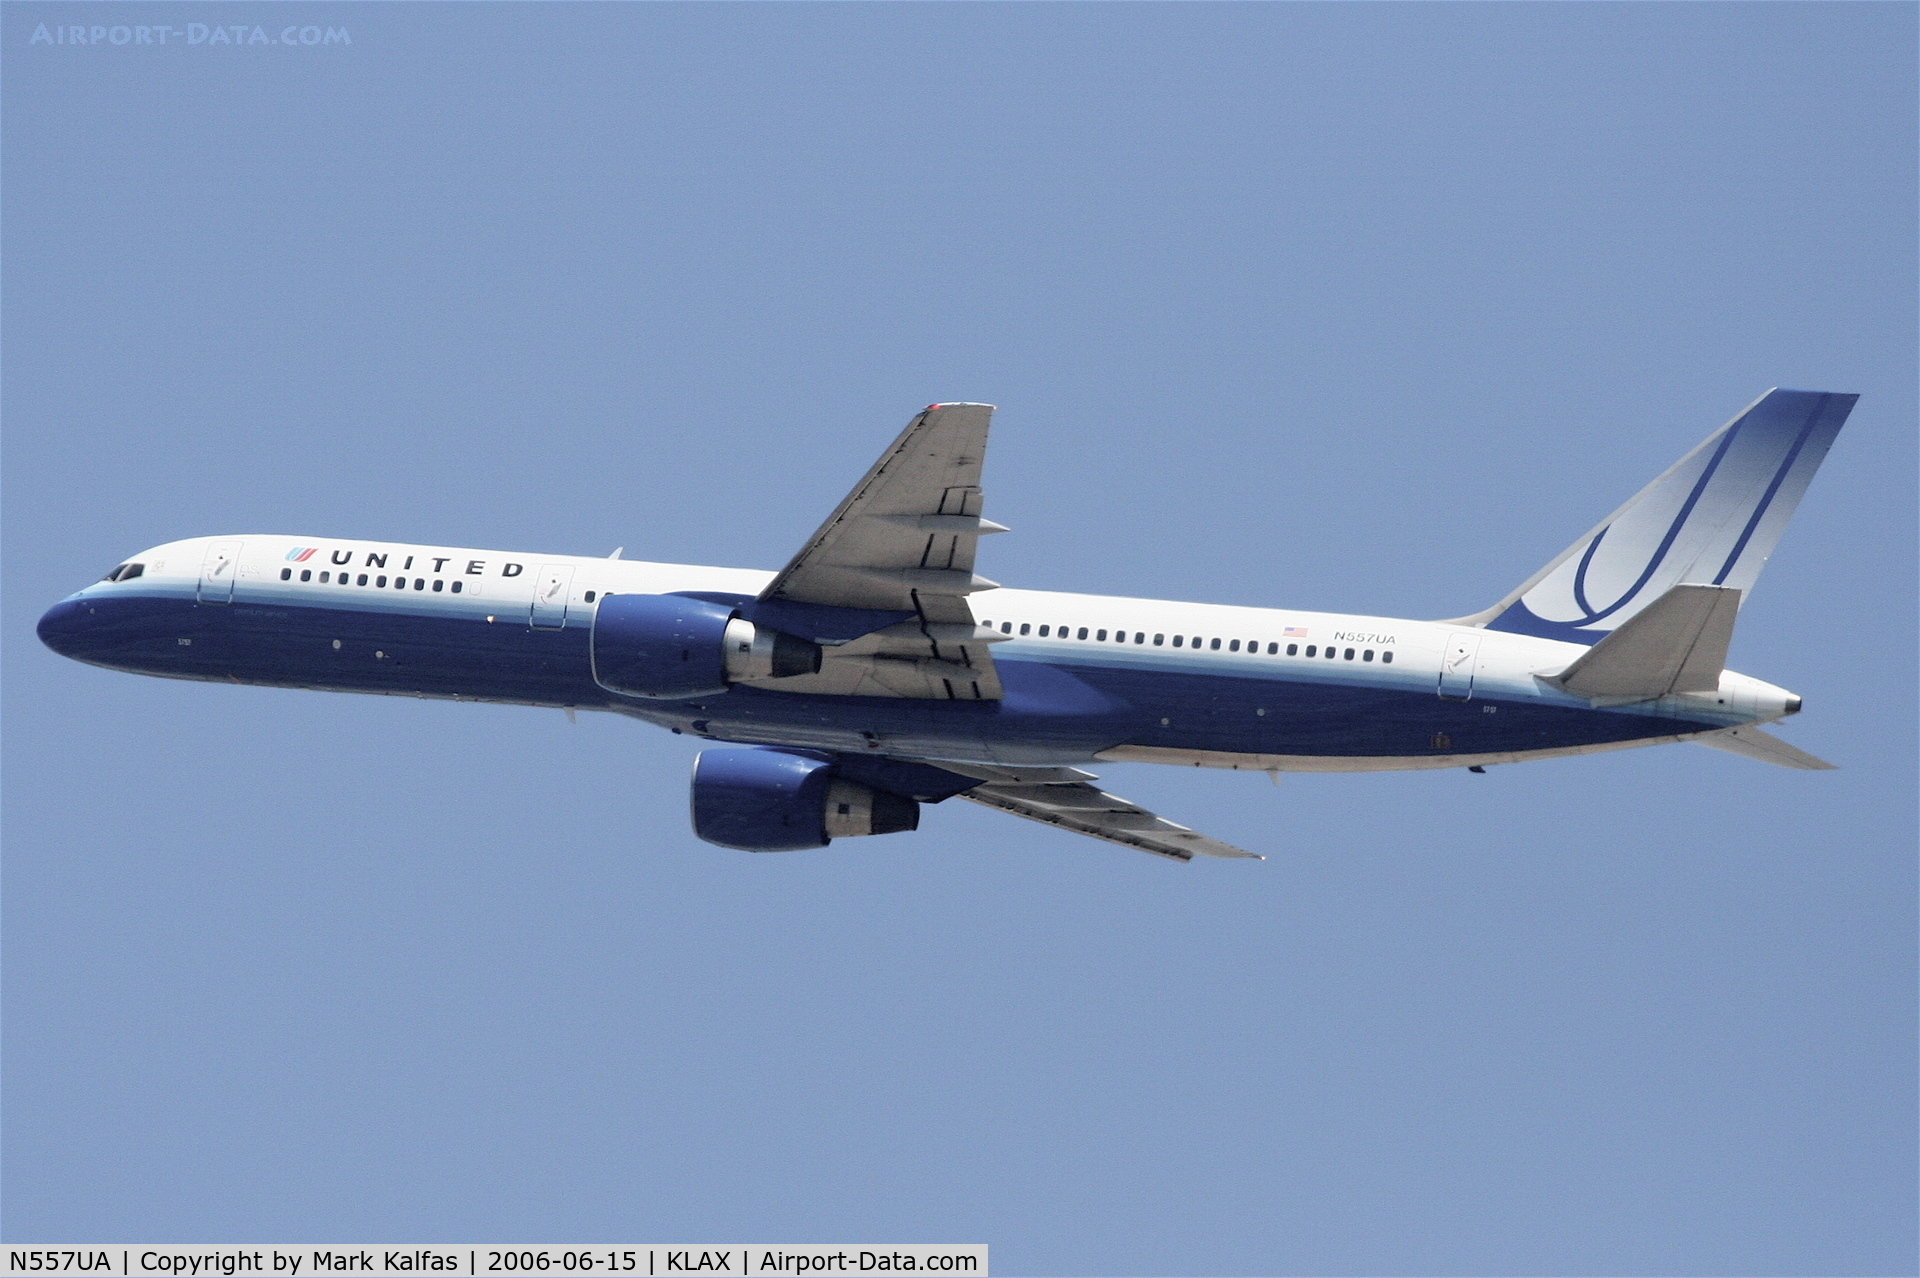 N557UA, 1992 Boeing 757-222 C/N 26653, United Airlines Boeing 757-222, N557UA departing KLAX 25R.